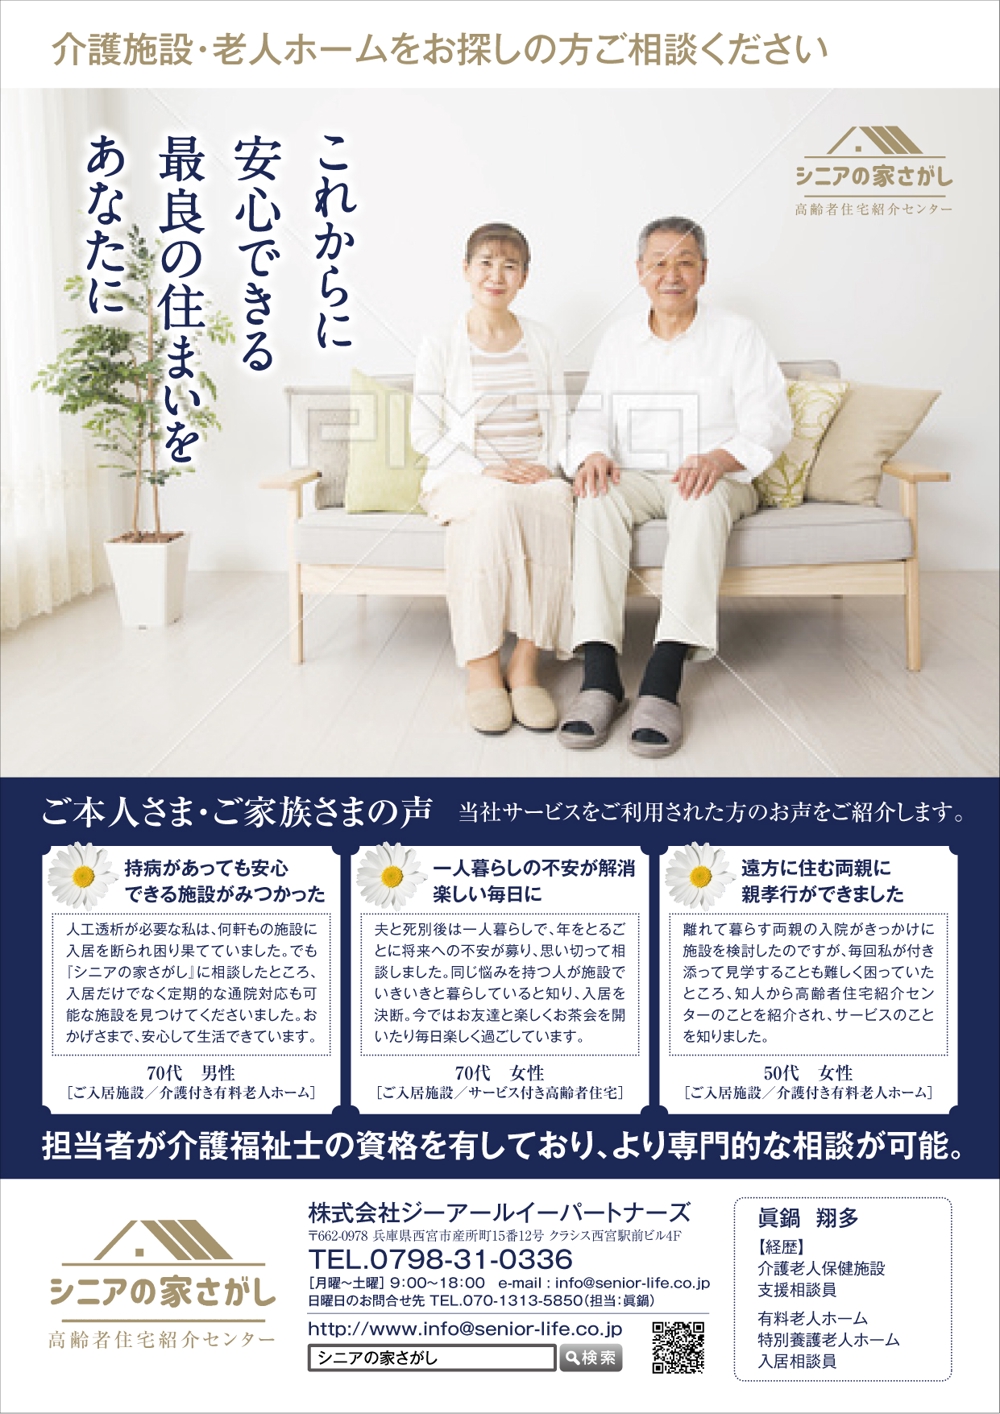 高齢者住宅紹介業営業用チラシ5_アートボード 1 のコピー.jpg